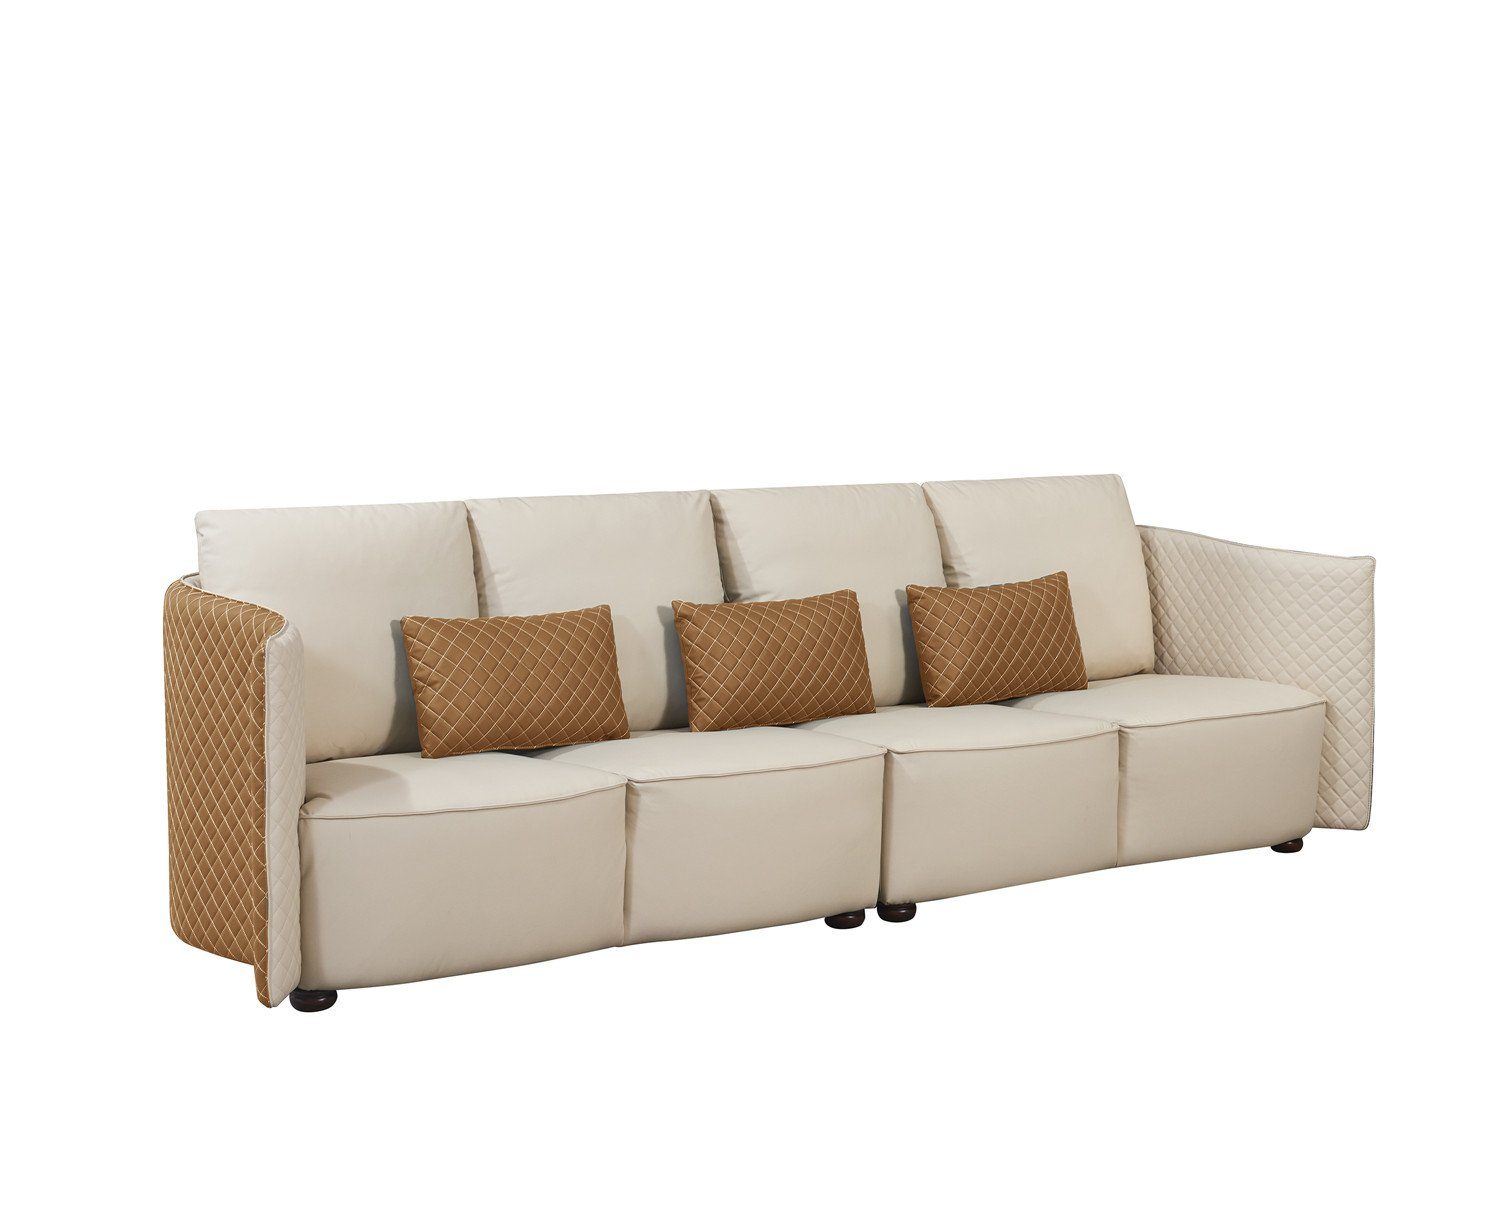 JVmoebel Sofa Große moderne Luxus Couch Wohnzimmermöbel, Made in Europe